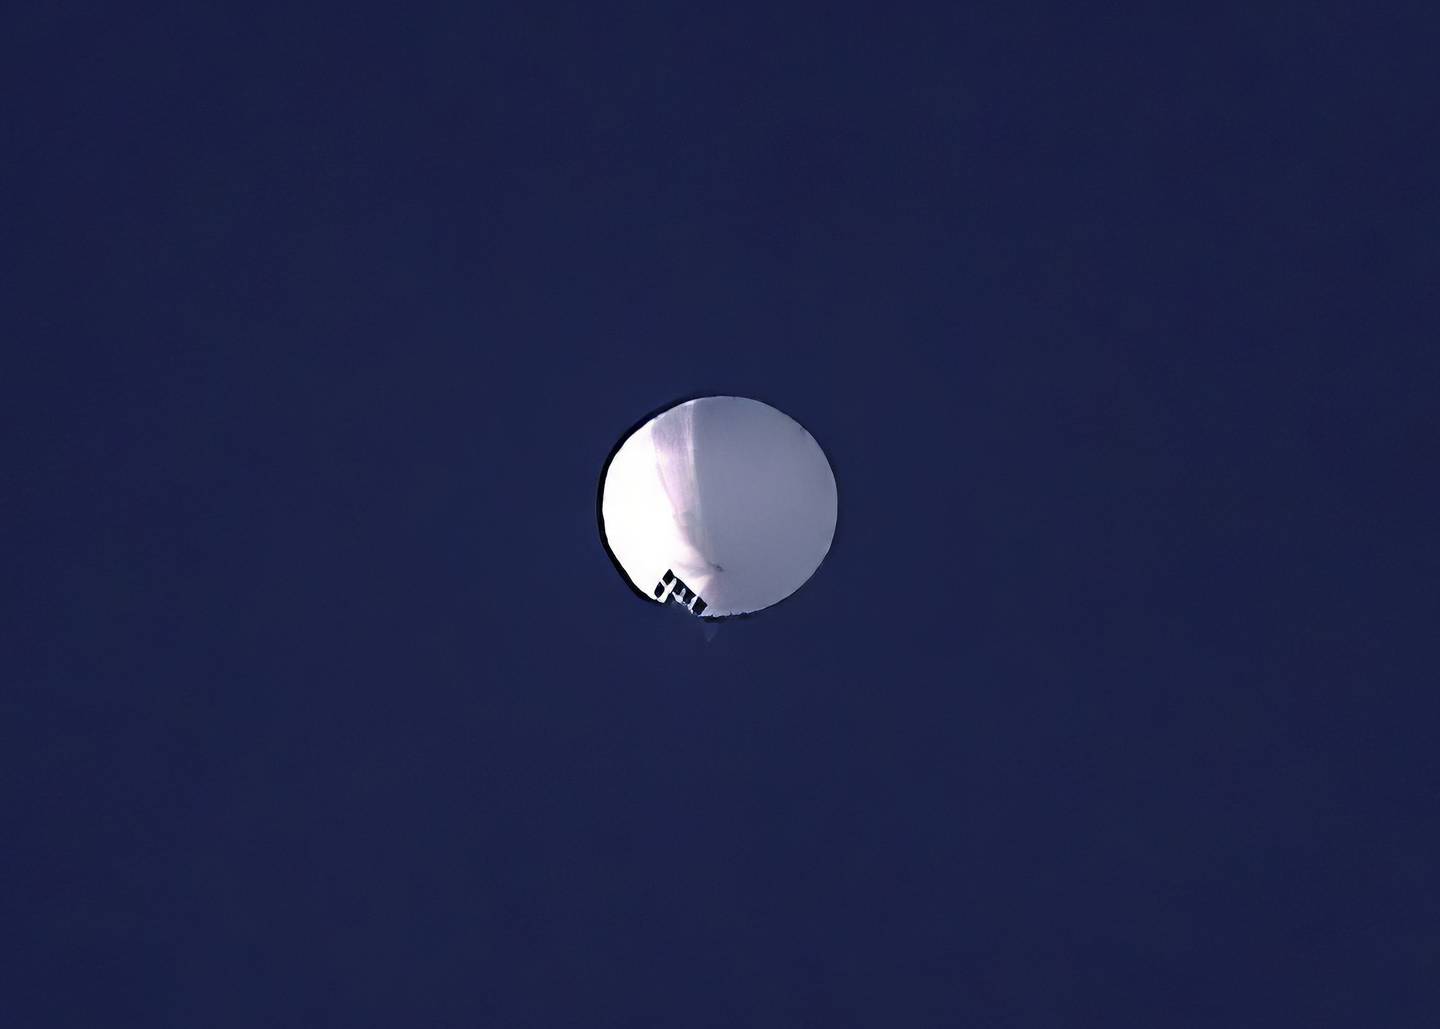 Un globo de gran altitud flota sobre Billings, Montana, el miércoles 1 de febrero de 2023. Estados Unidos está rastreando un presunto globo de vigilancia chino que ha sido visto sobre el espacio aéreo de EE.UU. durante un par de días. El Pentágono no confirmó que el globo de la foto fuera el globo de vigilancia. (Larry Mayer/The Billings Gazette vía AP)